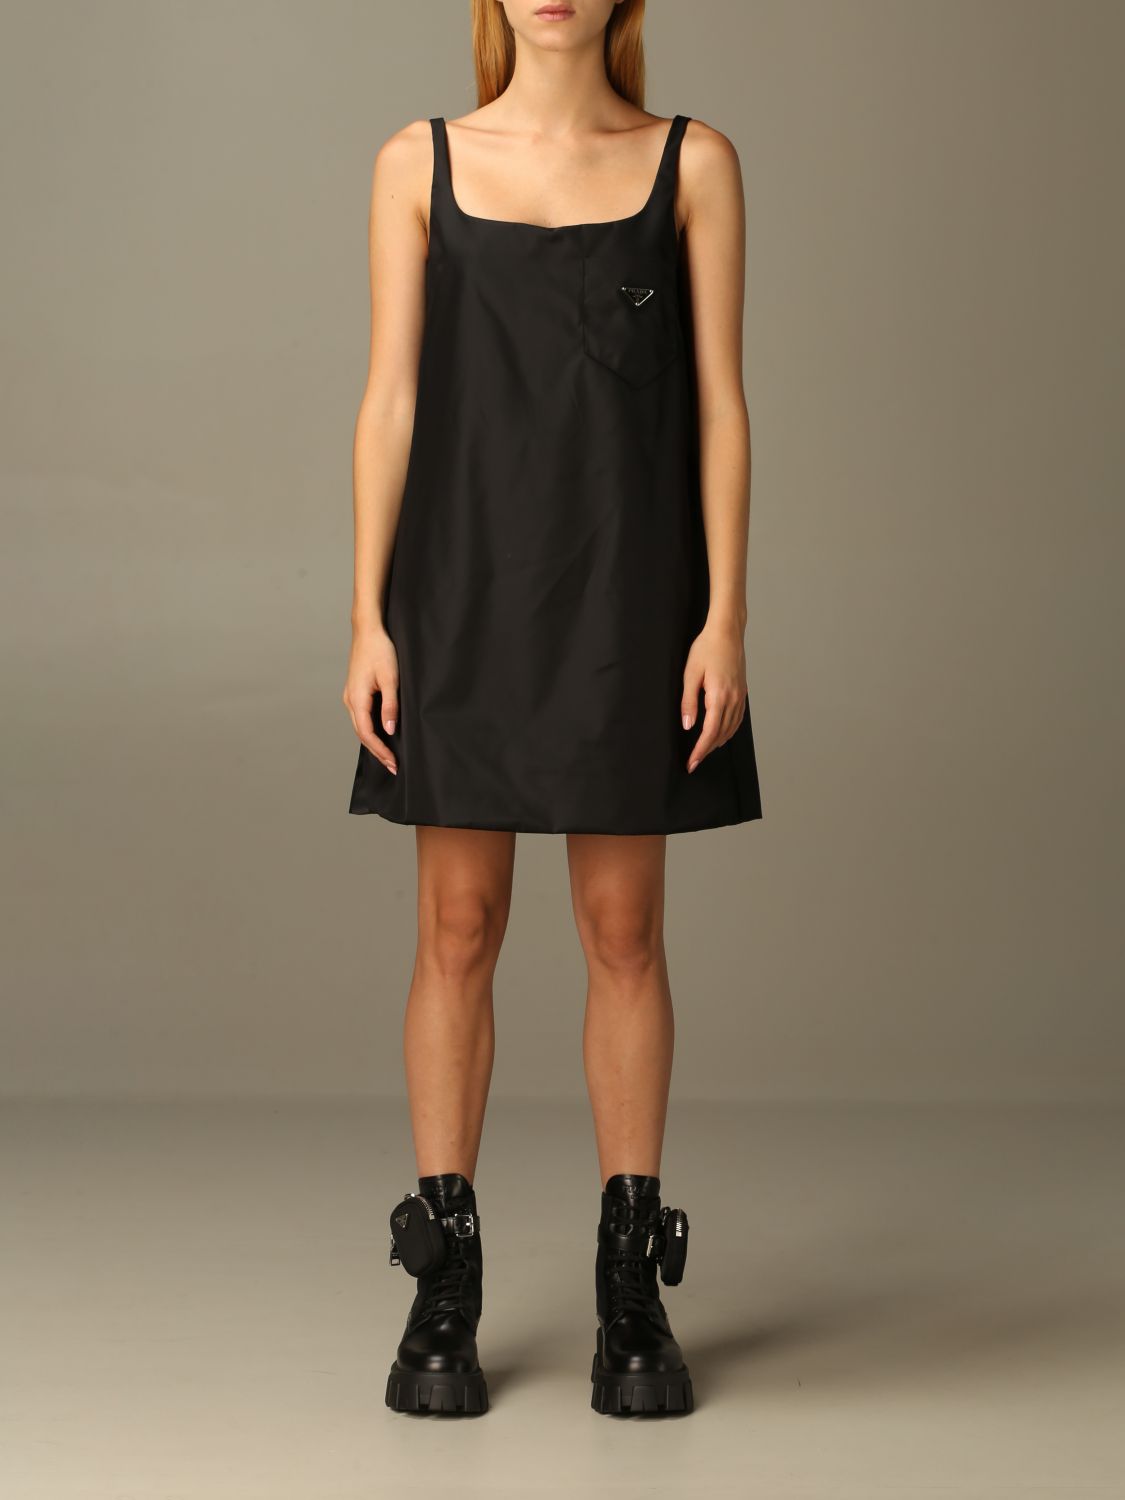 PRADA: nylon dress with triangular logo - Black | Prada dress 230621 1WQ8  online on 